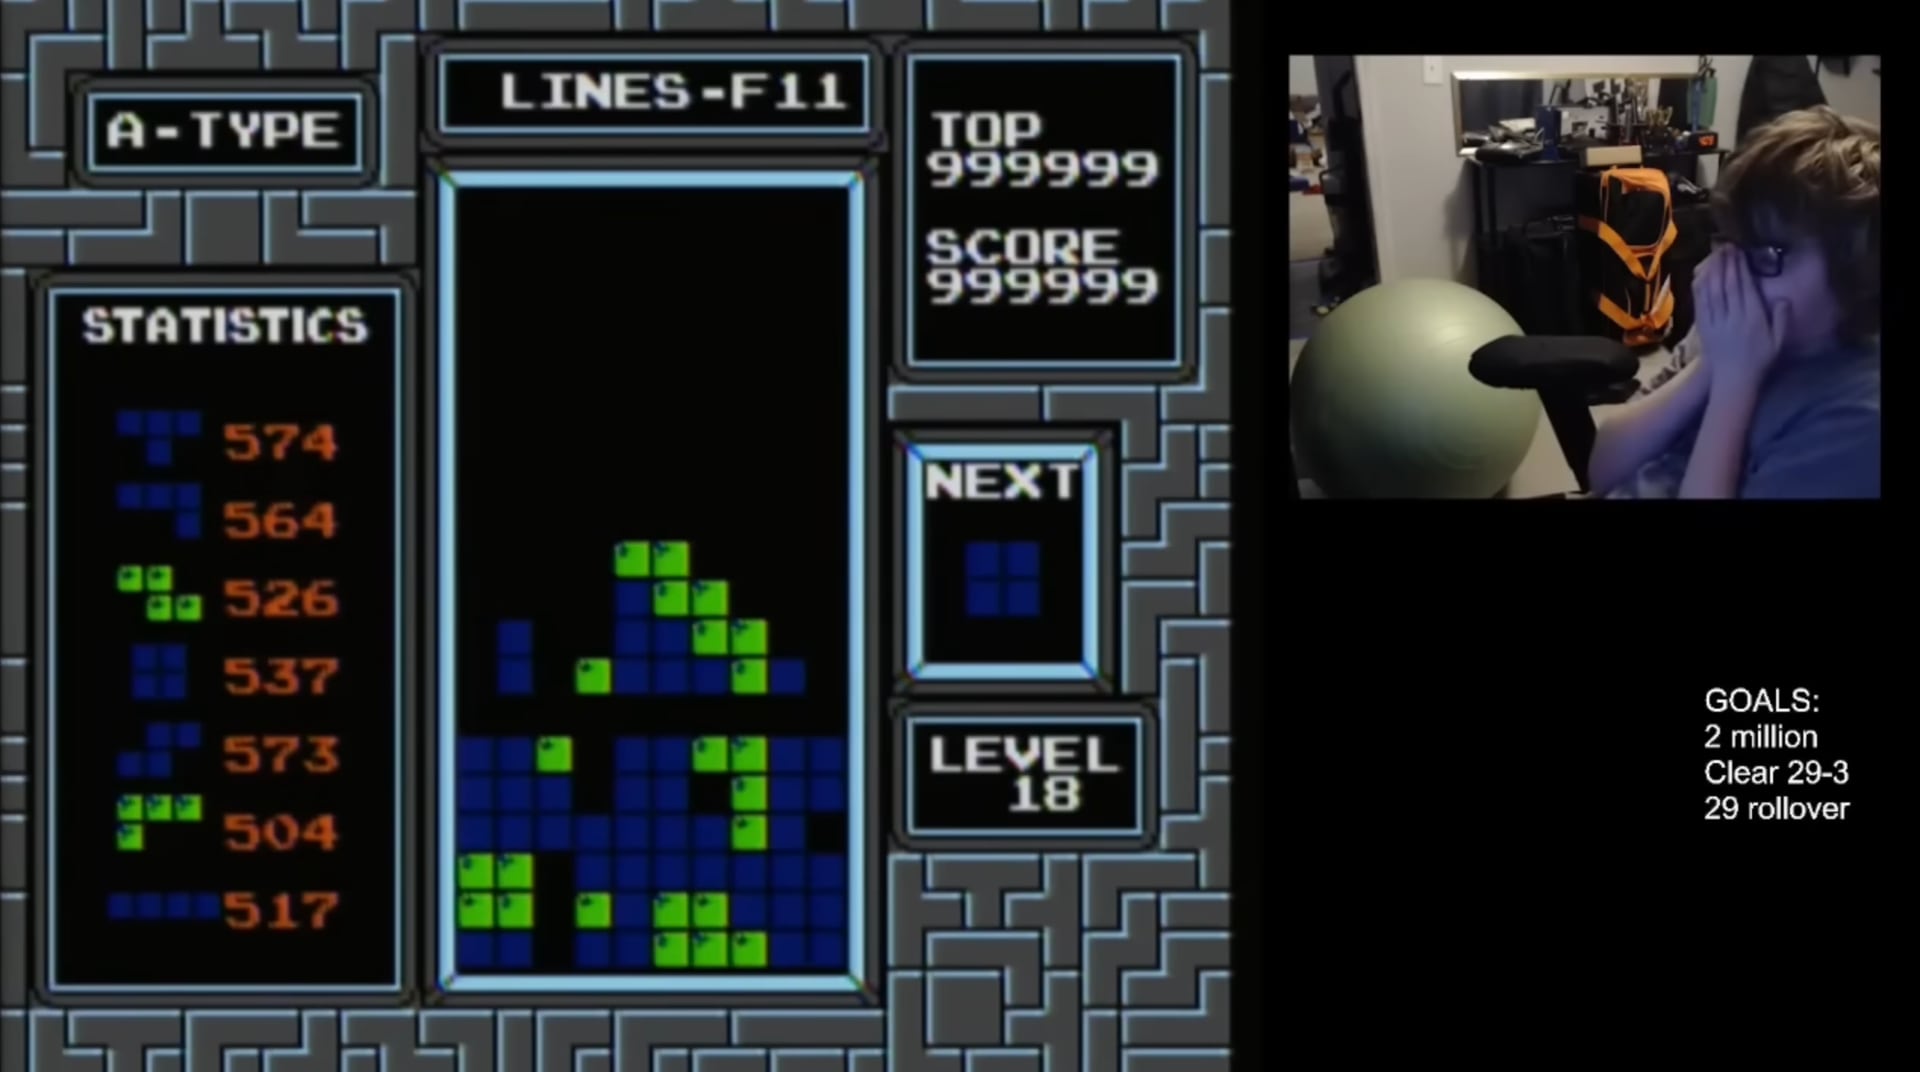 13-årige Willis Gibson från USA blev den första personen att slutföra ALLA Tetris (video)